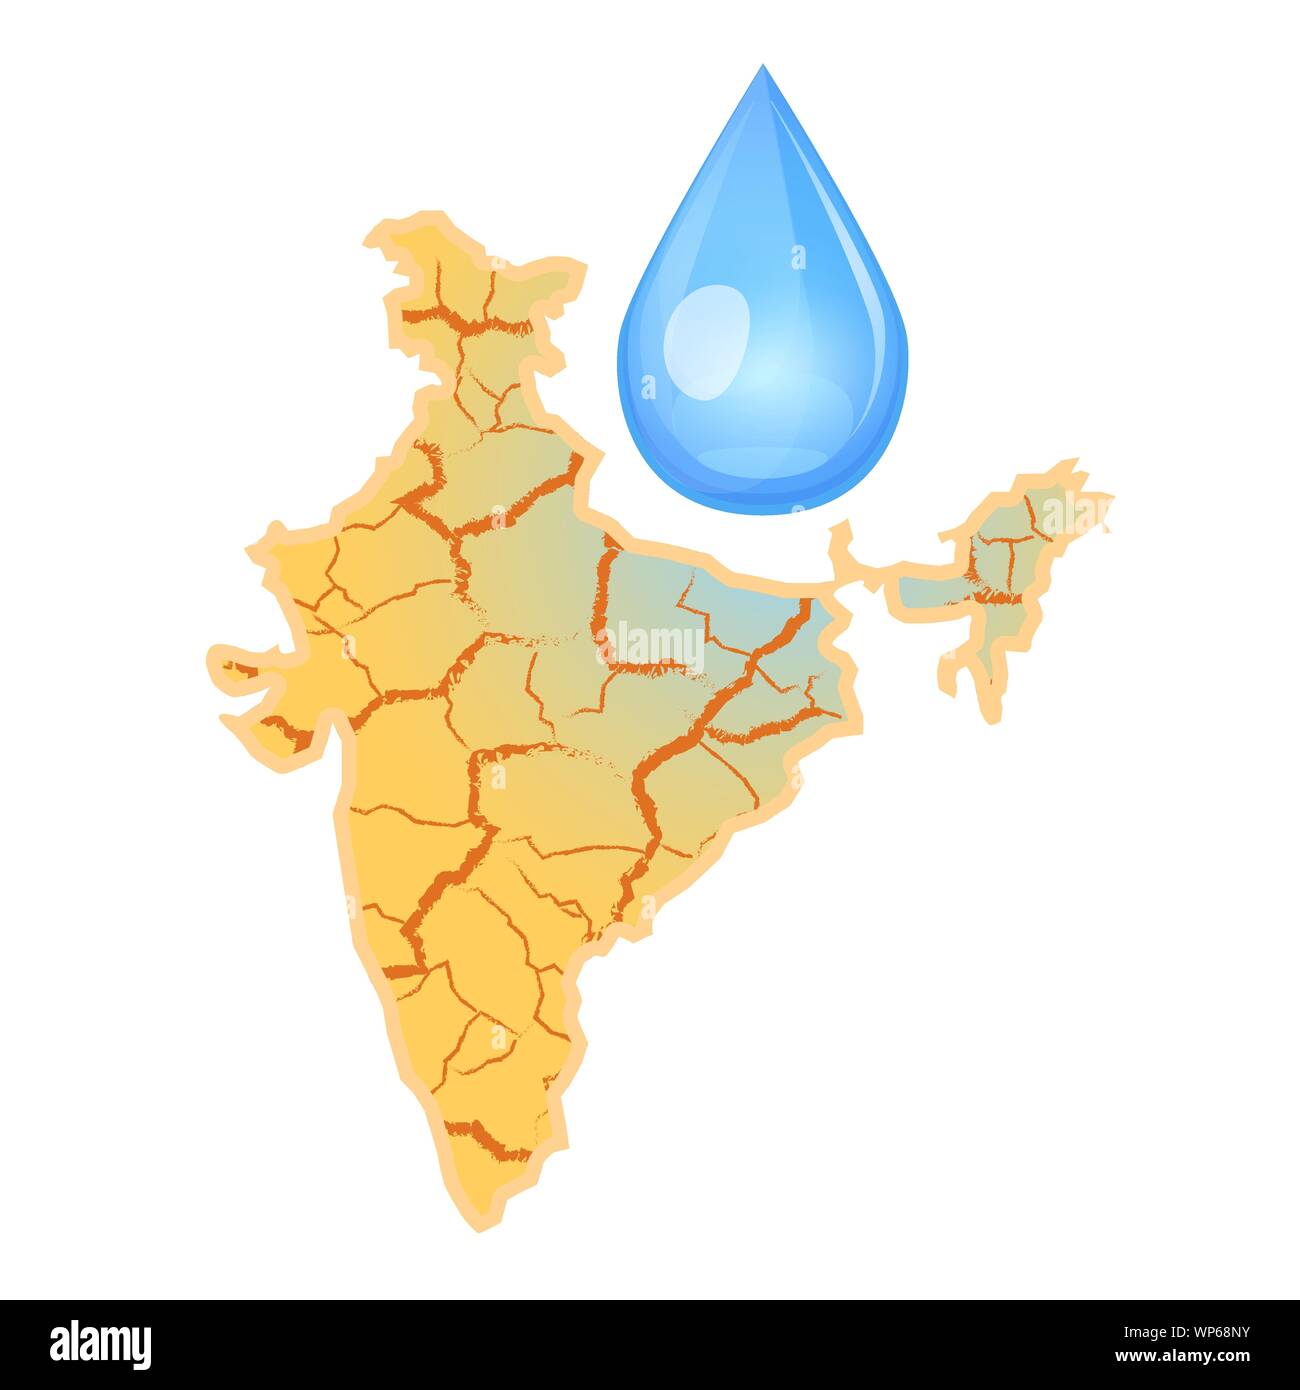 L'Inde a besoin d'eau. Concept de la rareté de l'eau. La sécheresse en Inde et une goutte d'eau. Illustration vectorielle, isolé sur fond blanc. Illustration de Vecteur